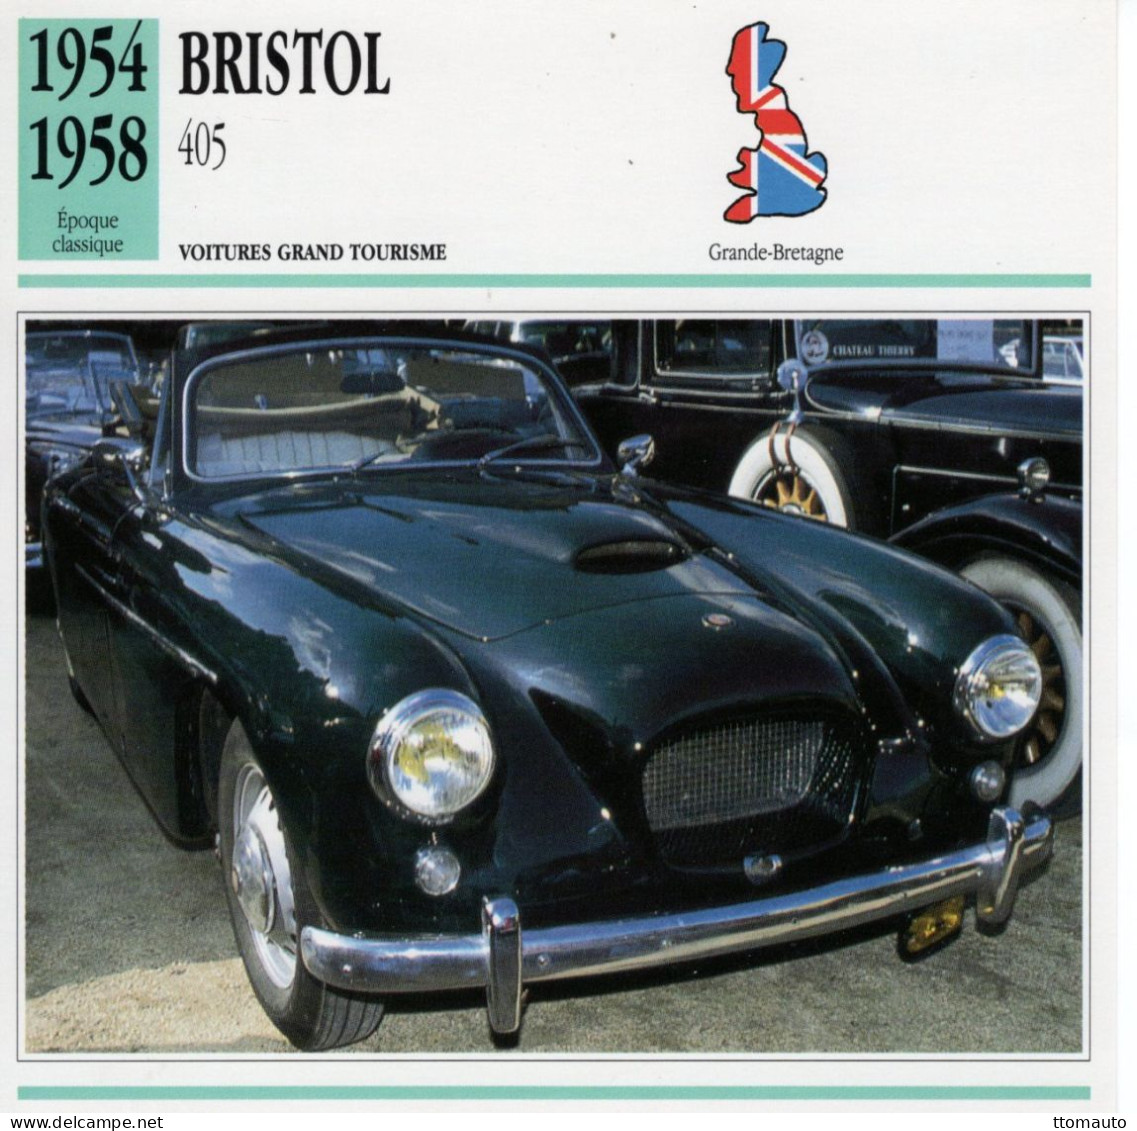 Bristol 405  -  1956  - Voiture Grand Tourisme -  Fiche Technique Automobile (GB) - Coches